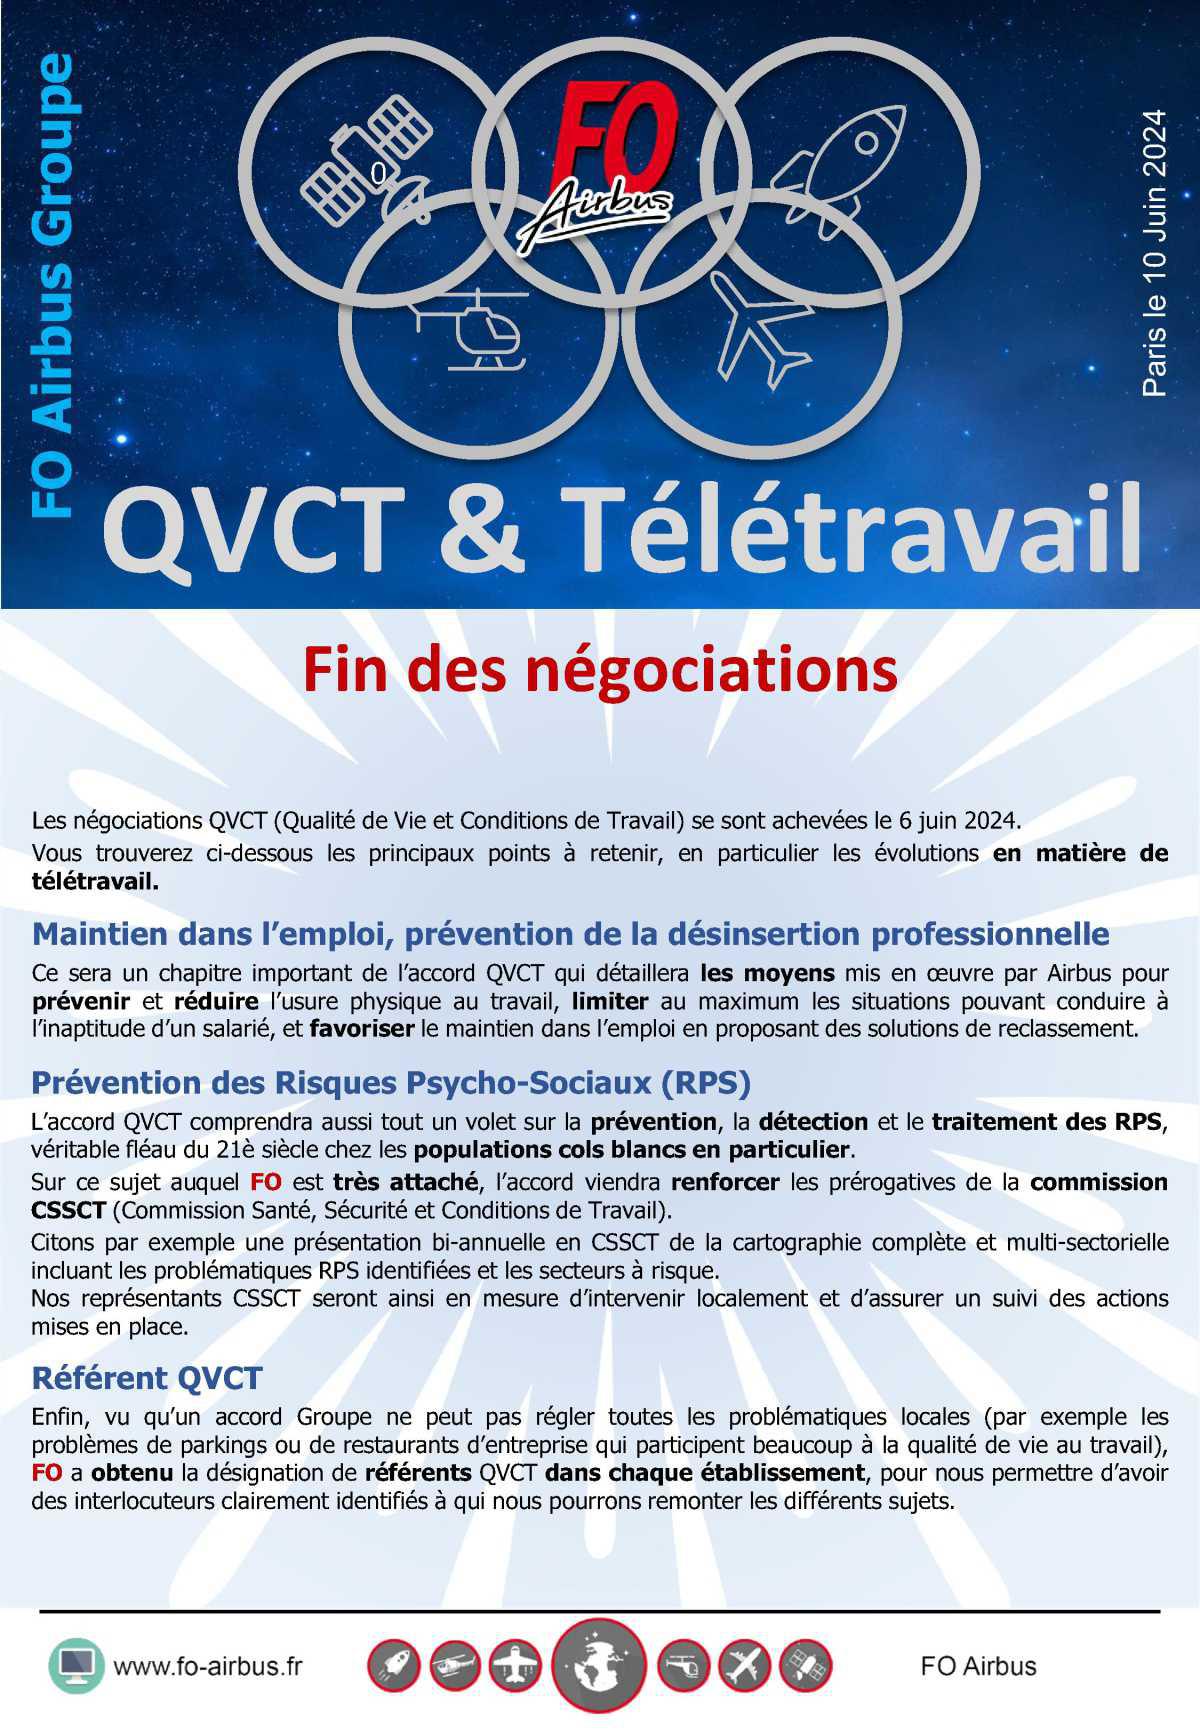 QVCT & télétravail, fin des négociations